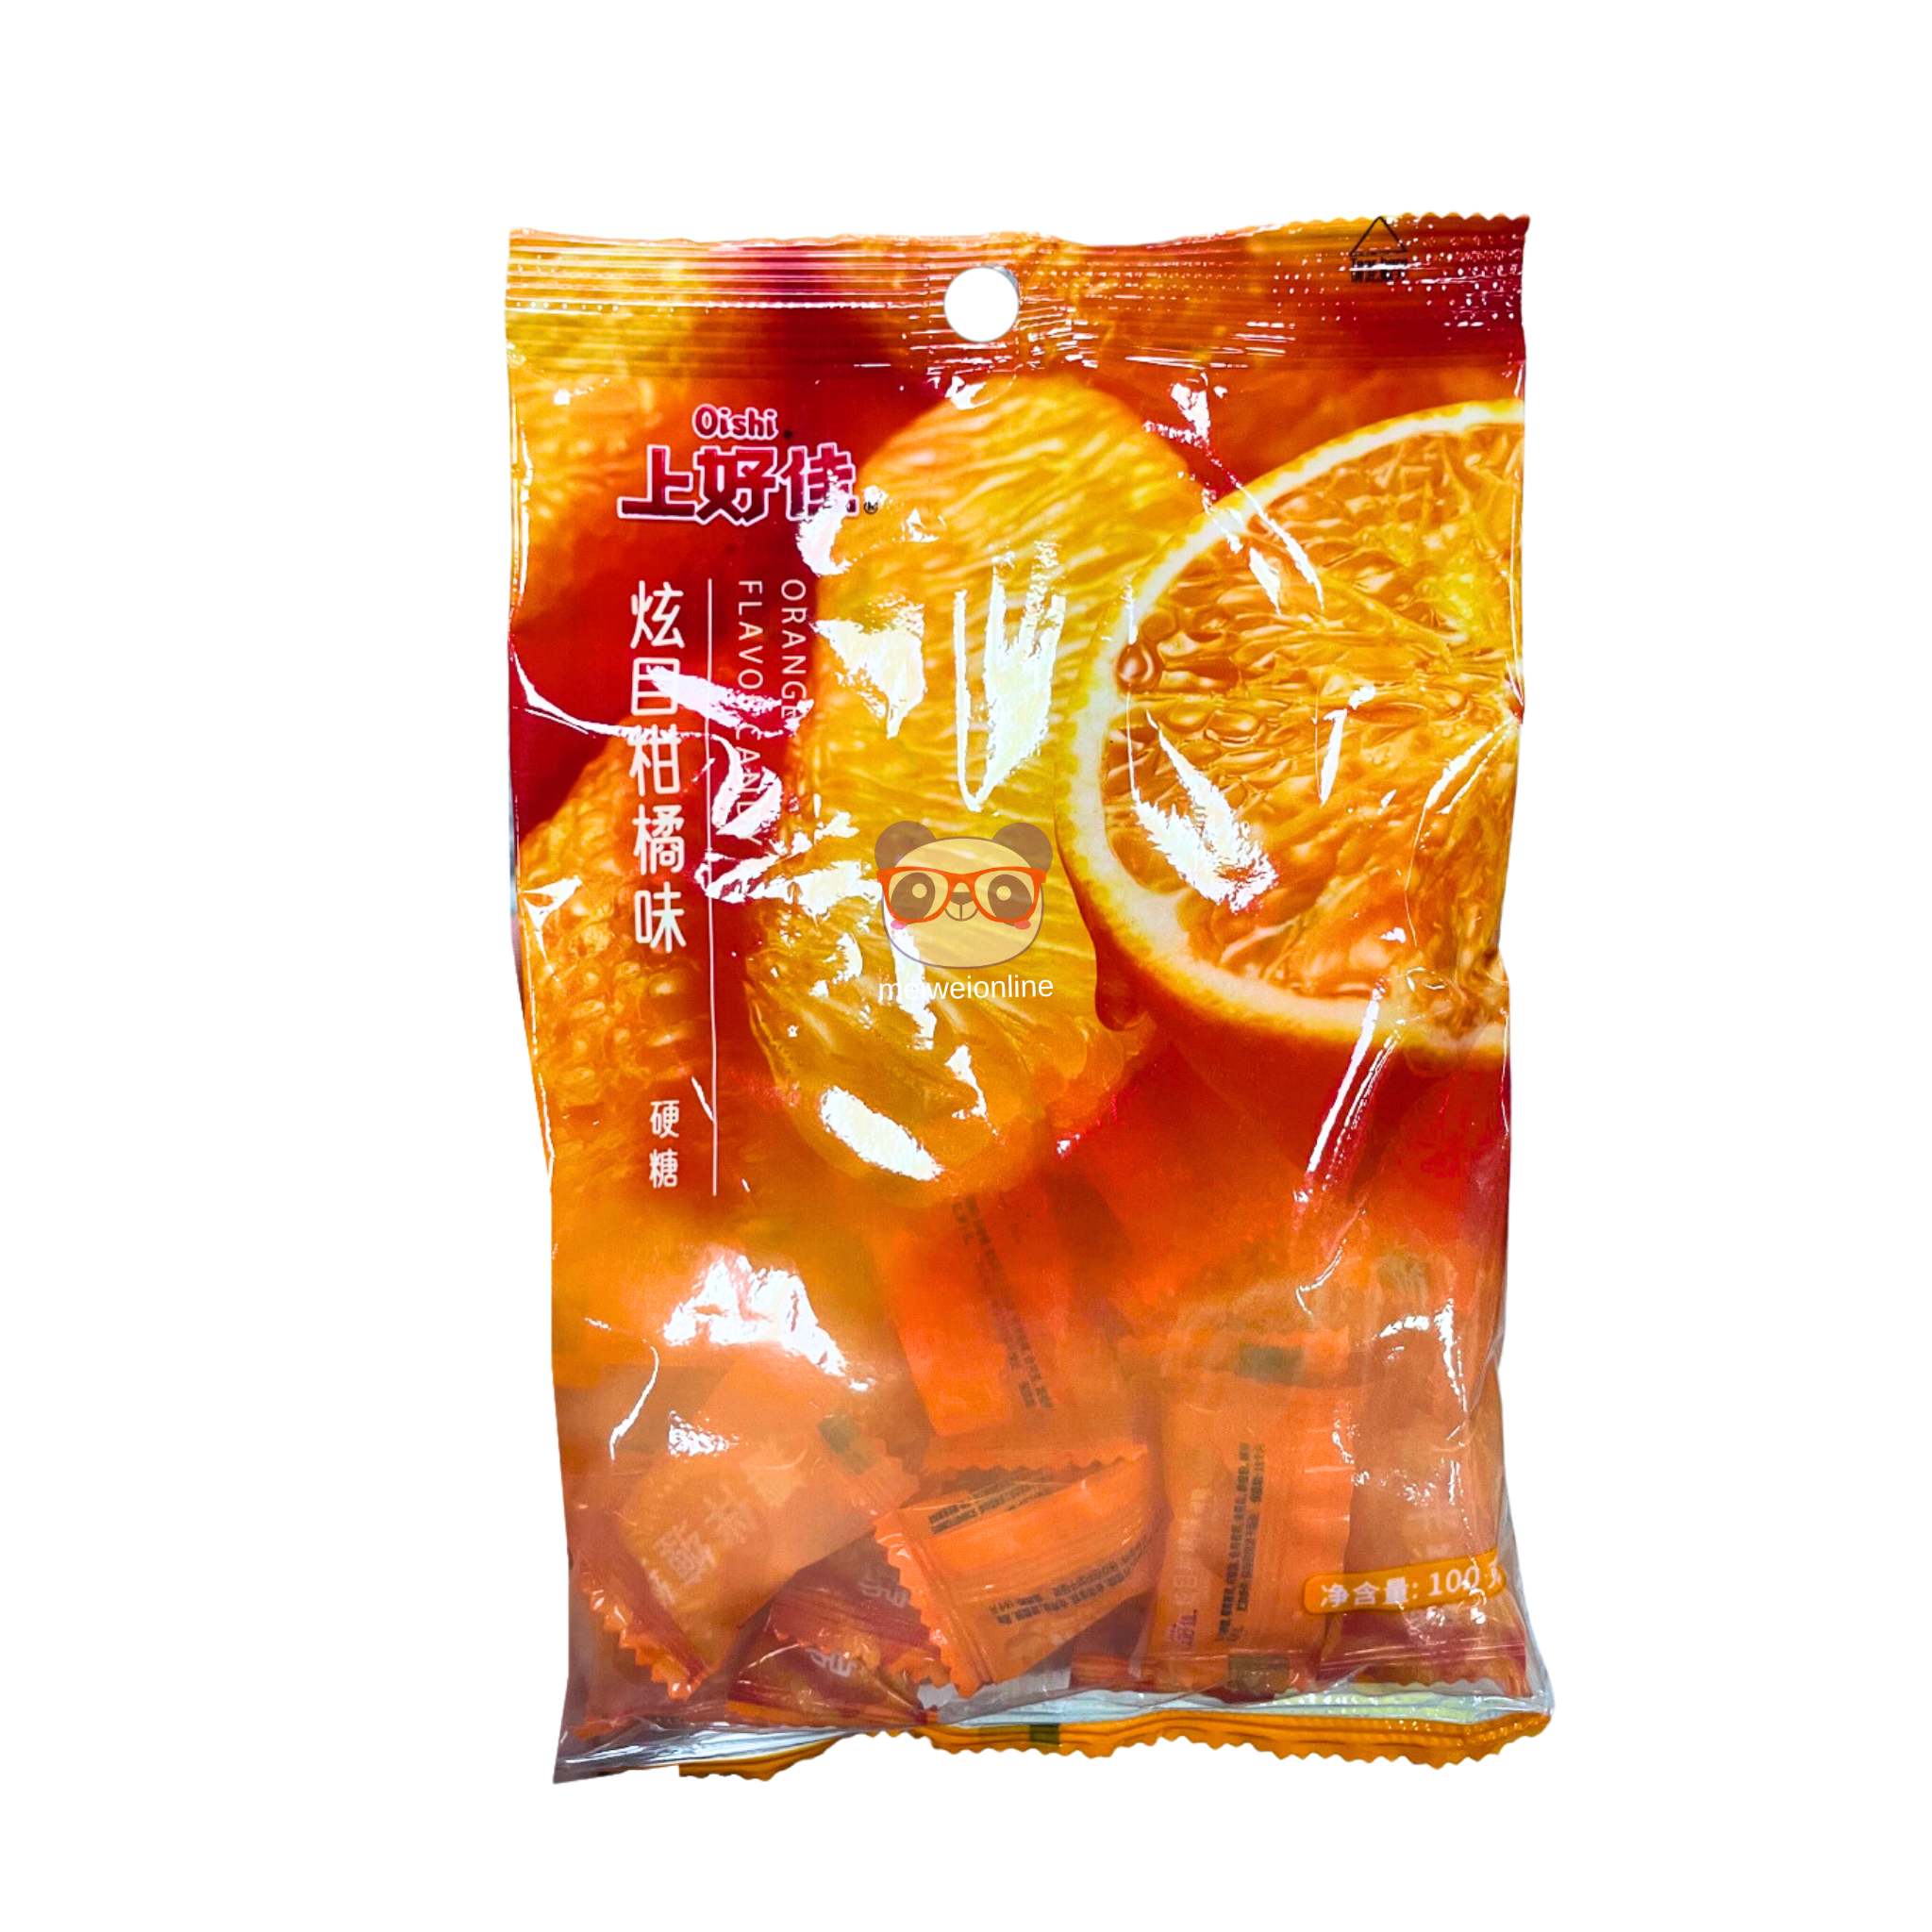 Bala de tangerina Oishi 100g